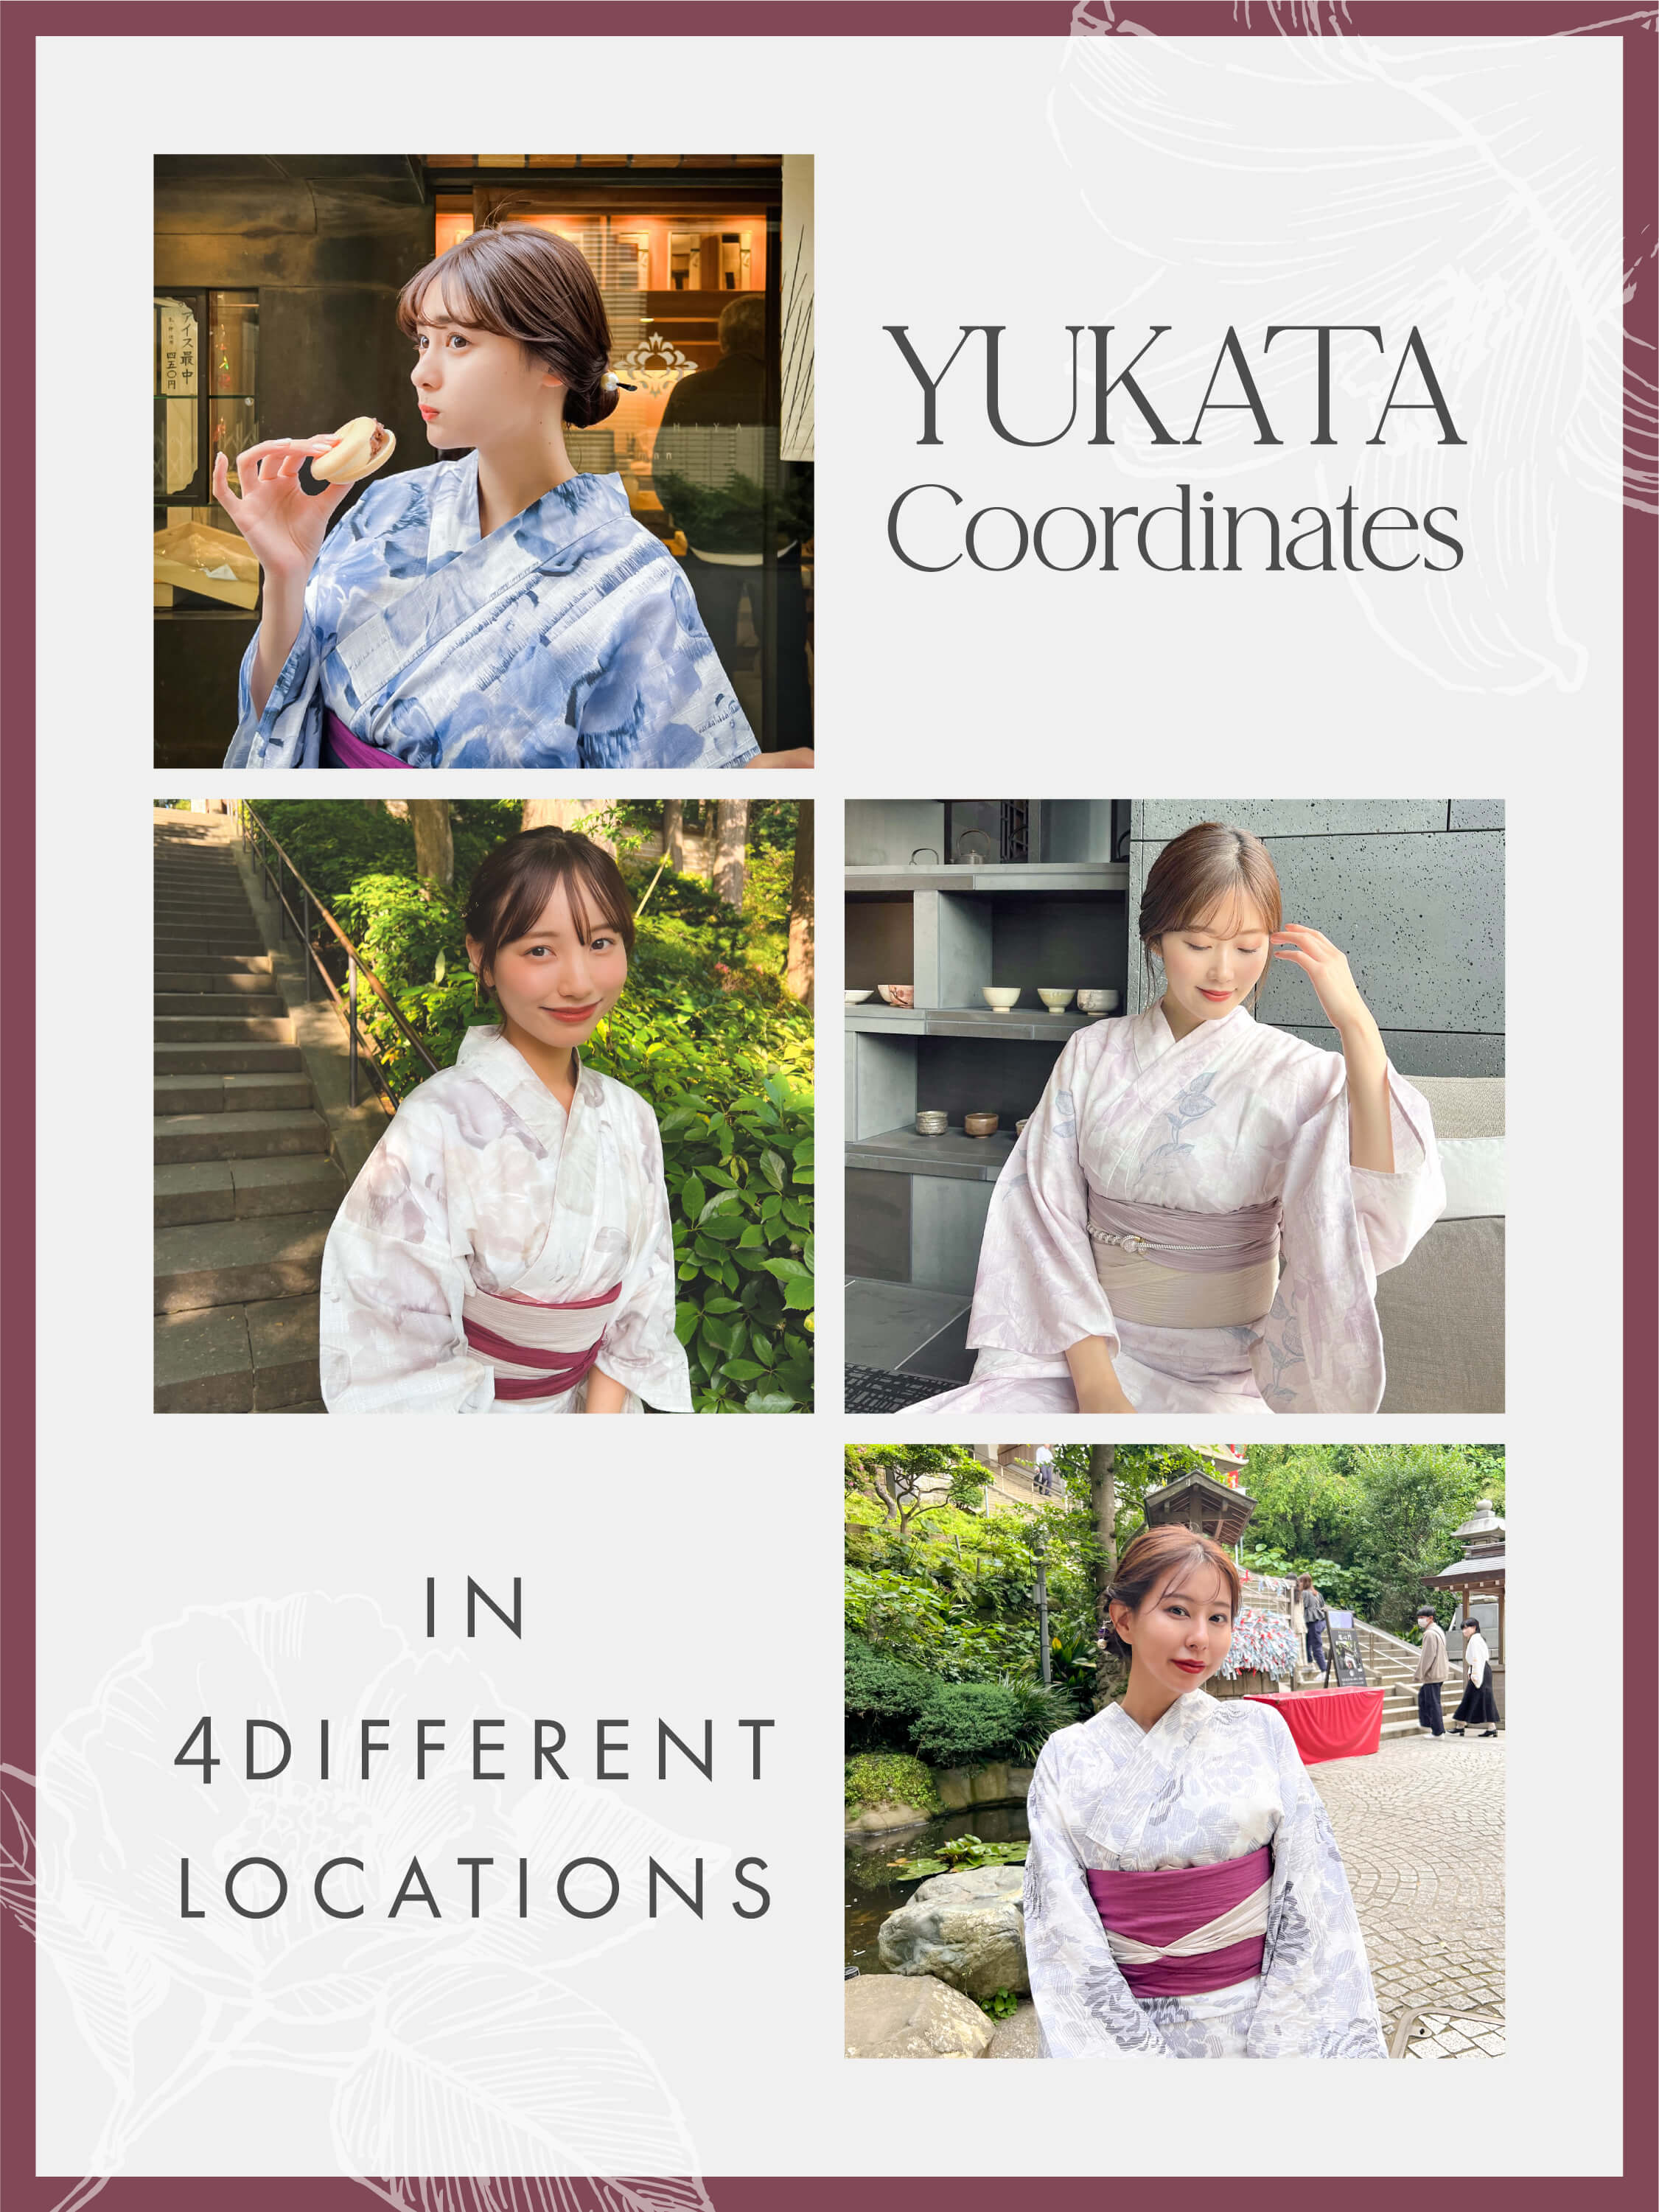 YUKATA Coordinates in 4 Different Locations